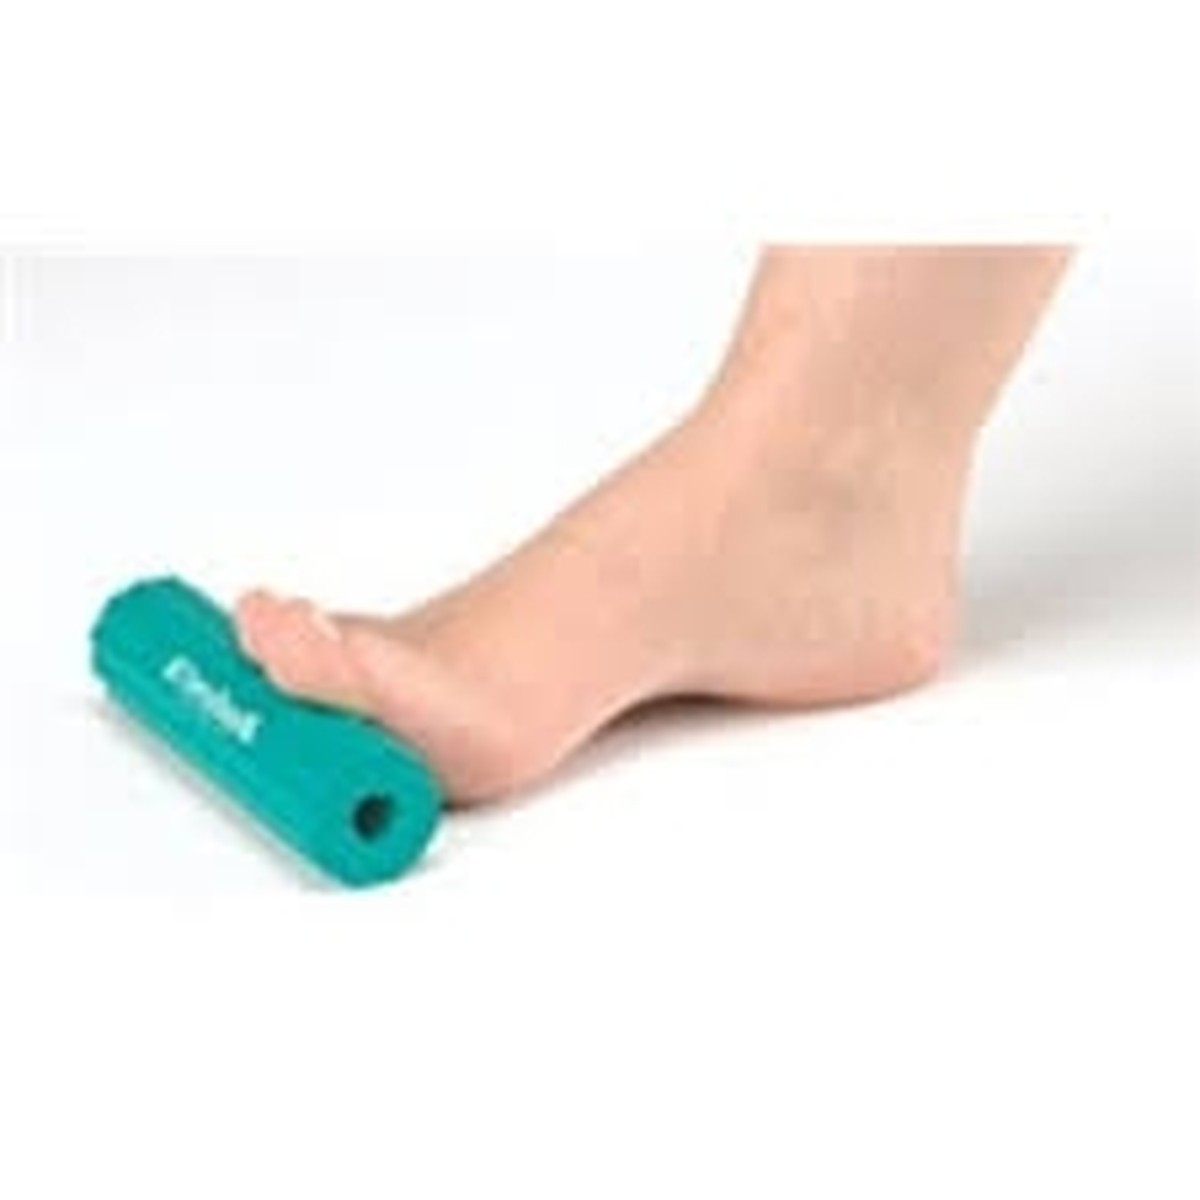 Foto do produto Rolo para os pés Foot Roller